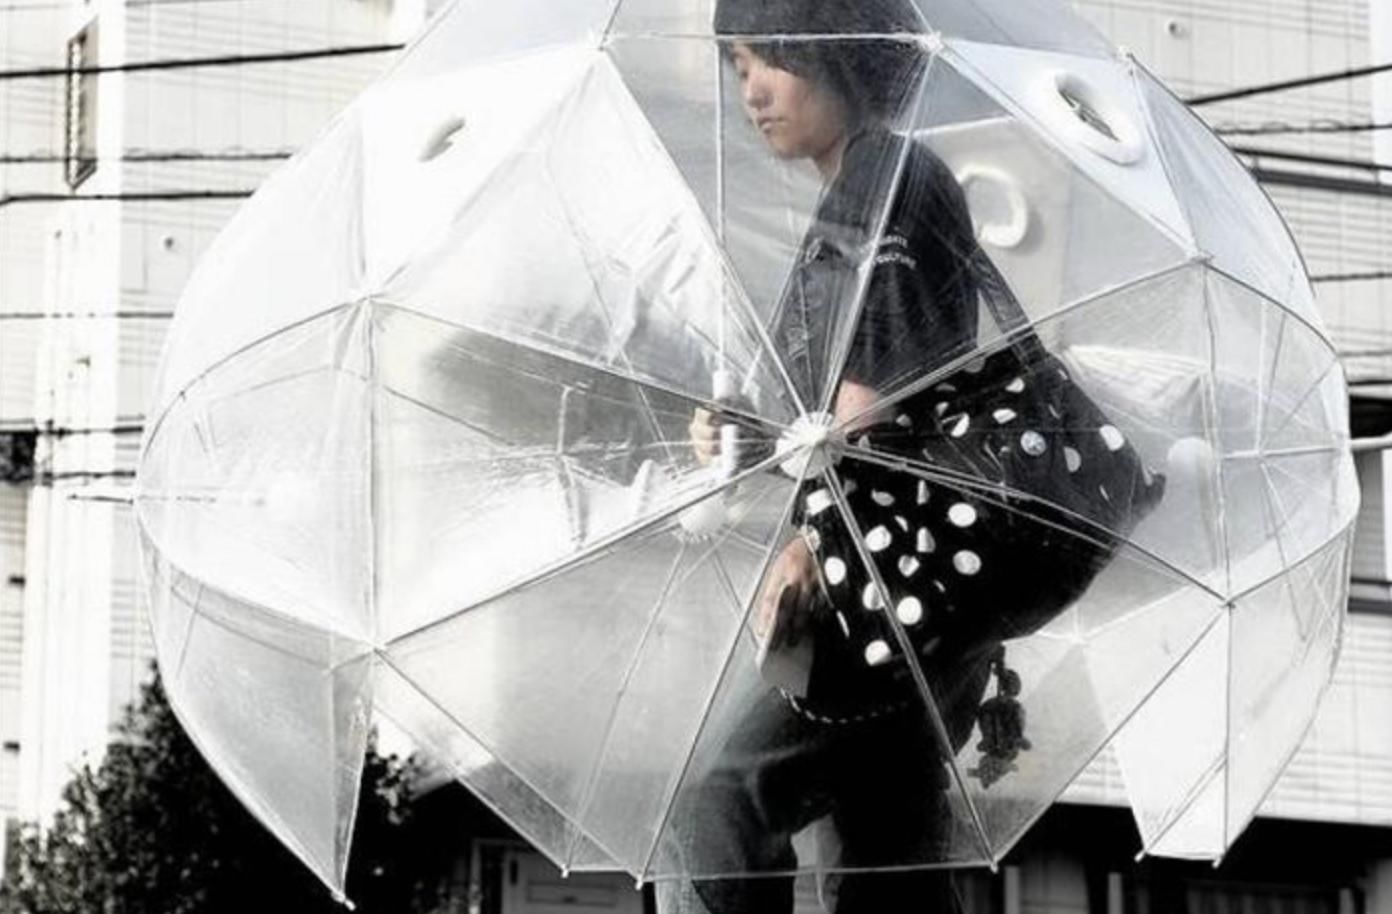 这样的雨伞也很奇葩,不知道日本人的脑子里想些什么,竟然做了这么多